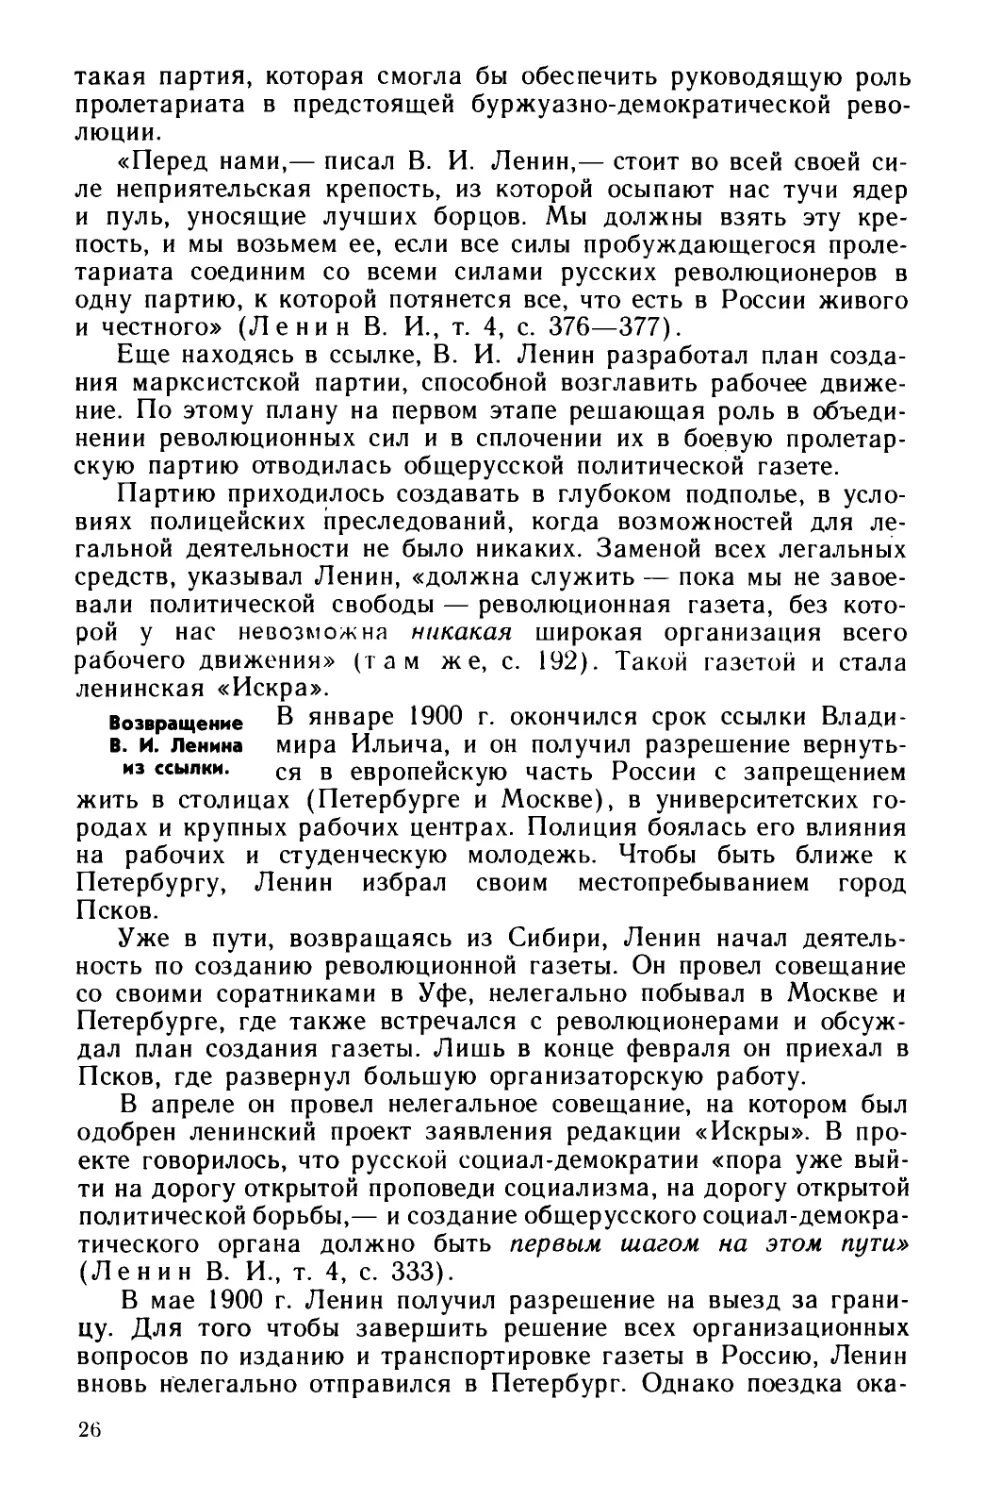 § 6. Создание революционной марксистской партии в России